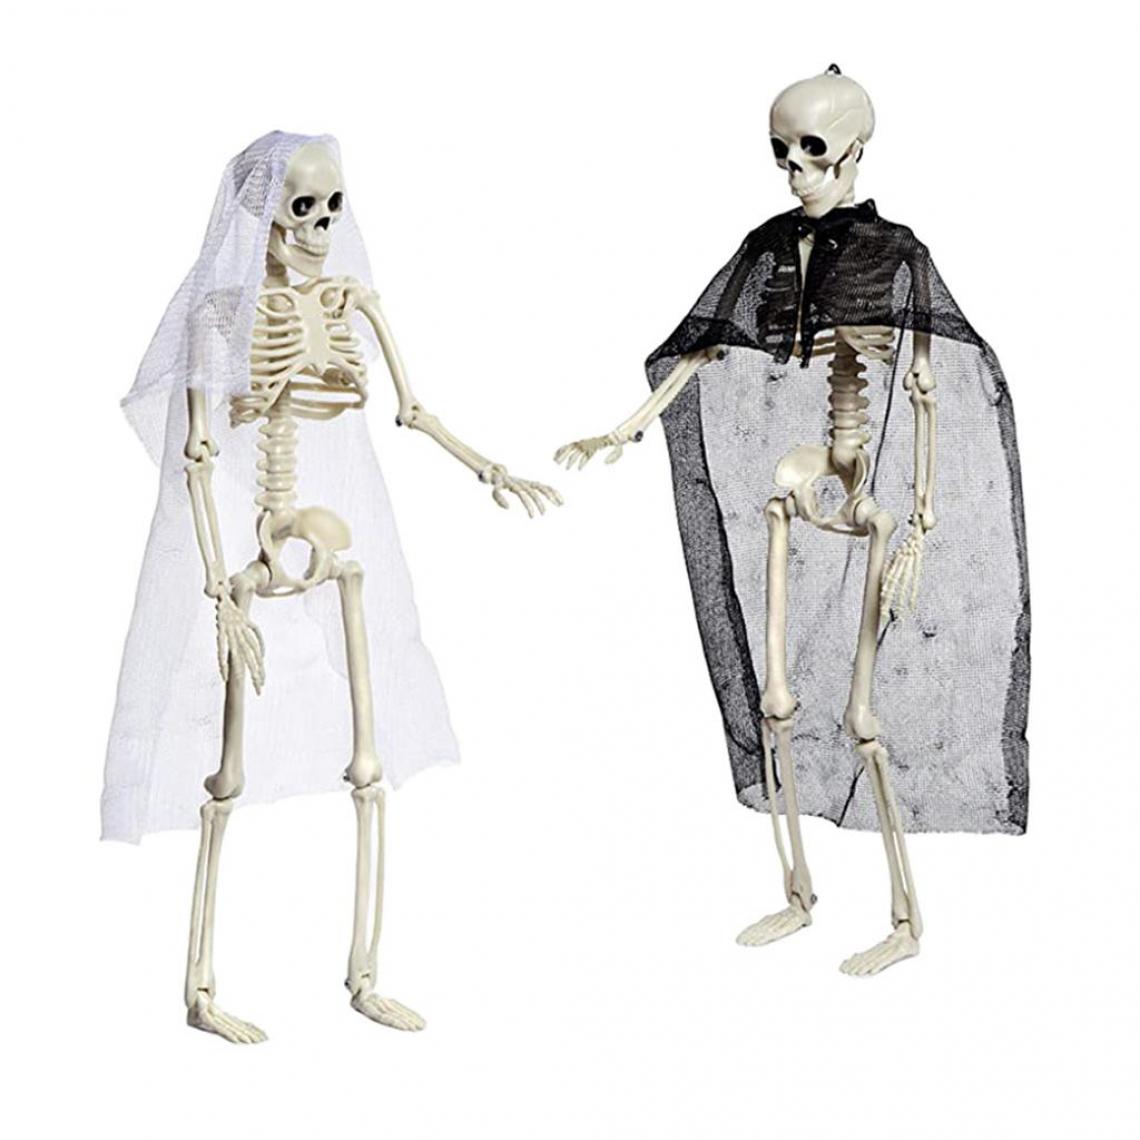 marque generique - Décor de fête d'halloween modèle squelette humain - Objets déco